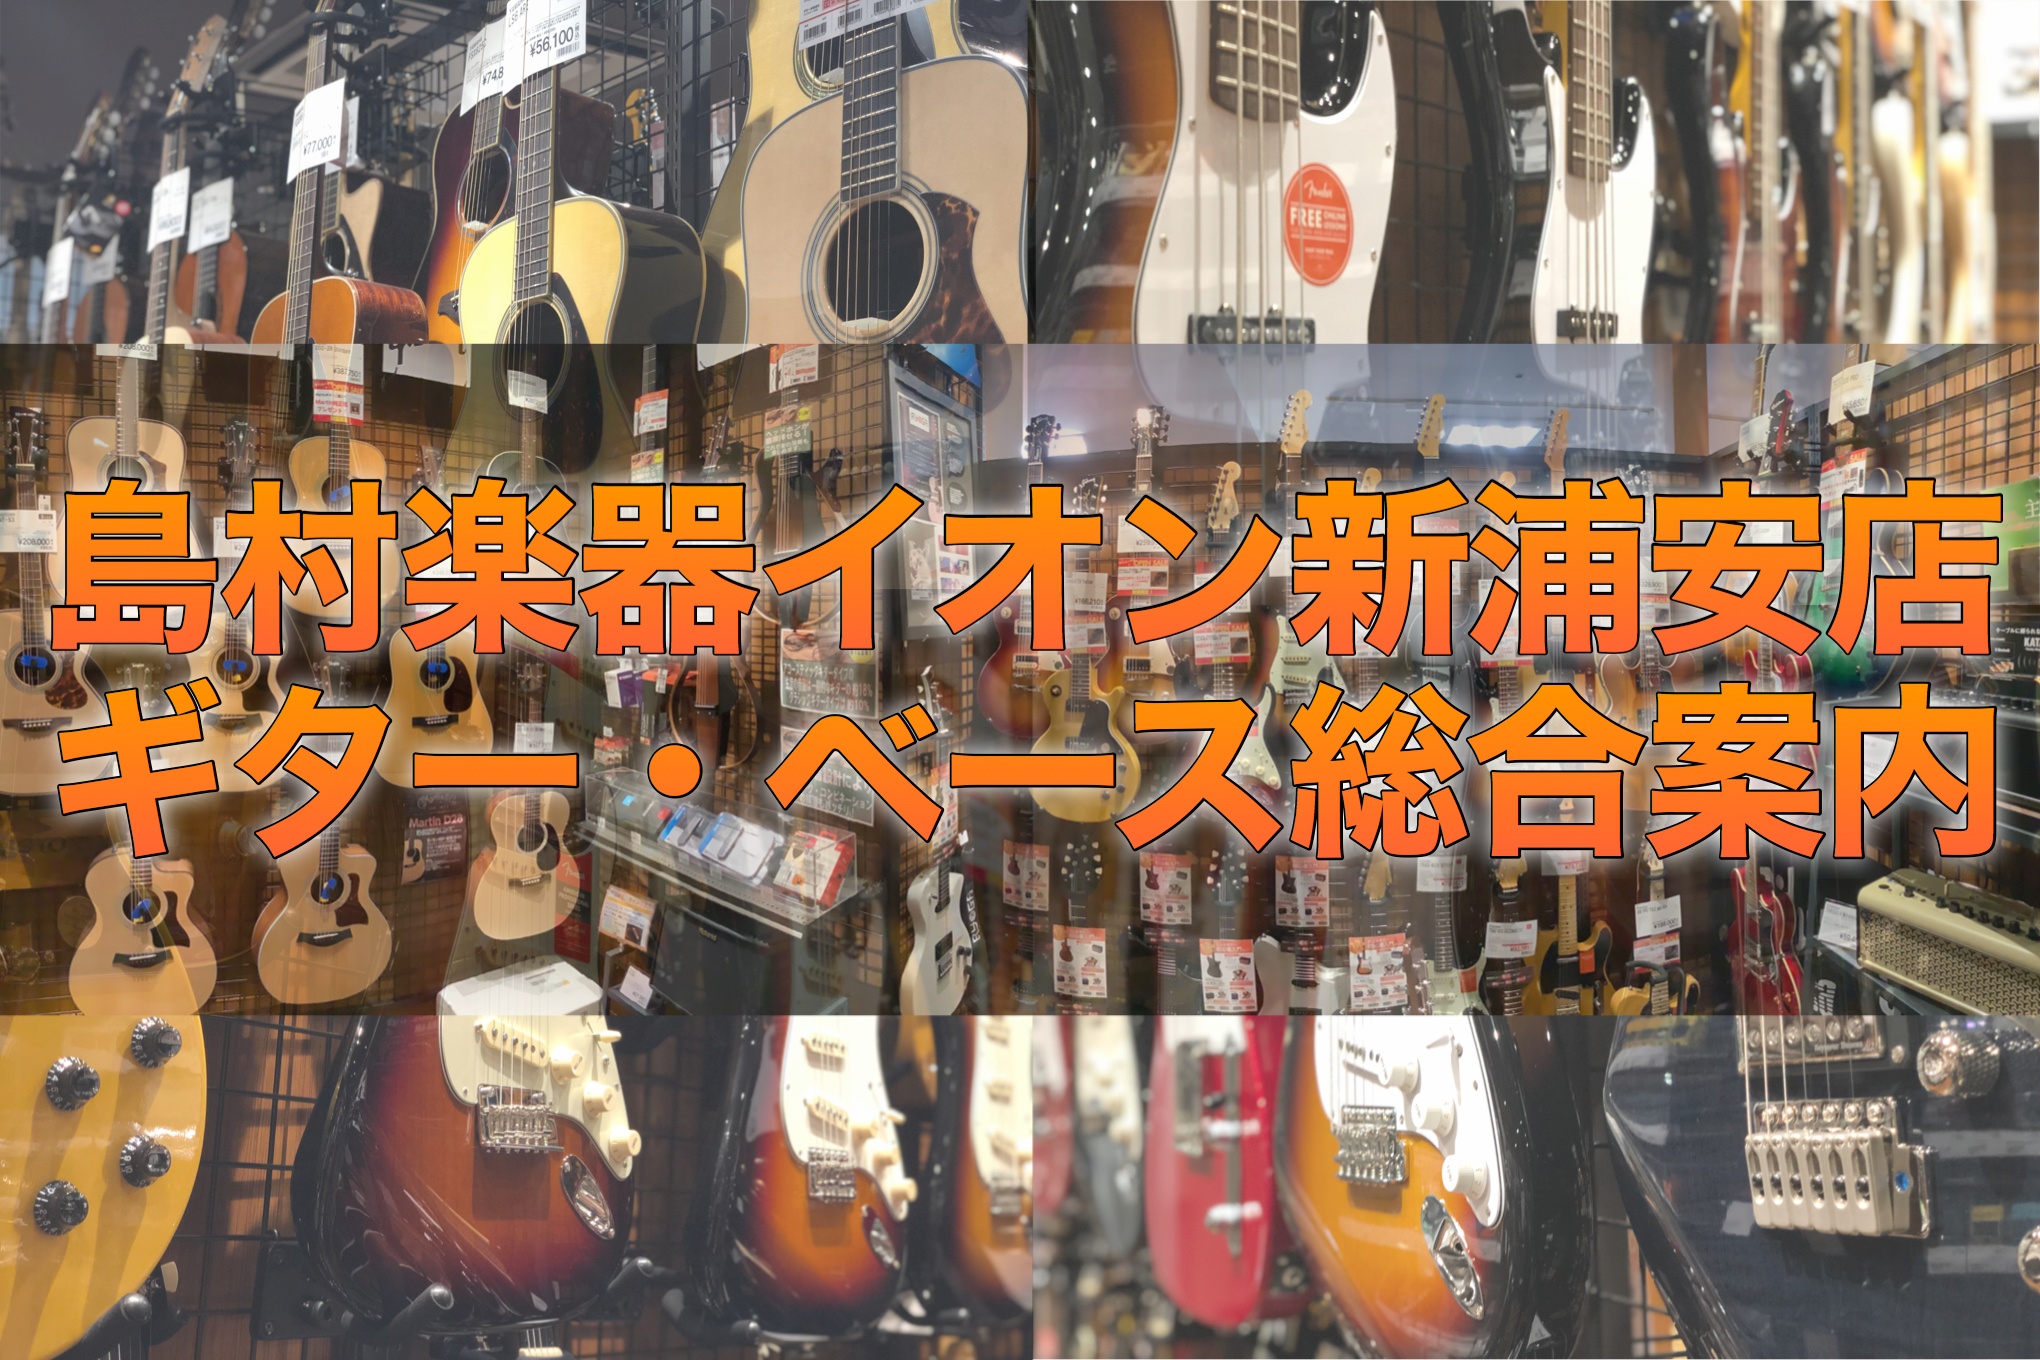 ***広々とした店内で、ゆっくりお選びいただけます。 イオン新浦安店には、常時約150本の展示がございます。入門用ギターを始め、有名ブランドのギターや当社おすすめギターまで幅広く取り揃えております。専門スタッフスタッフが日々丁寧にギターのメンテナンスを行い展示しております。島村楽器は全国150店舗、 […]